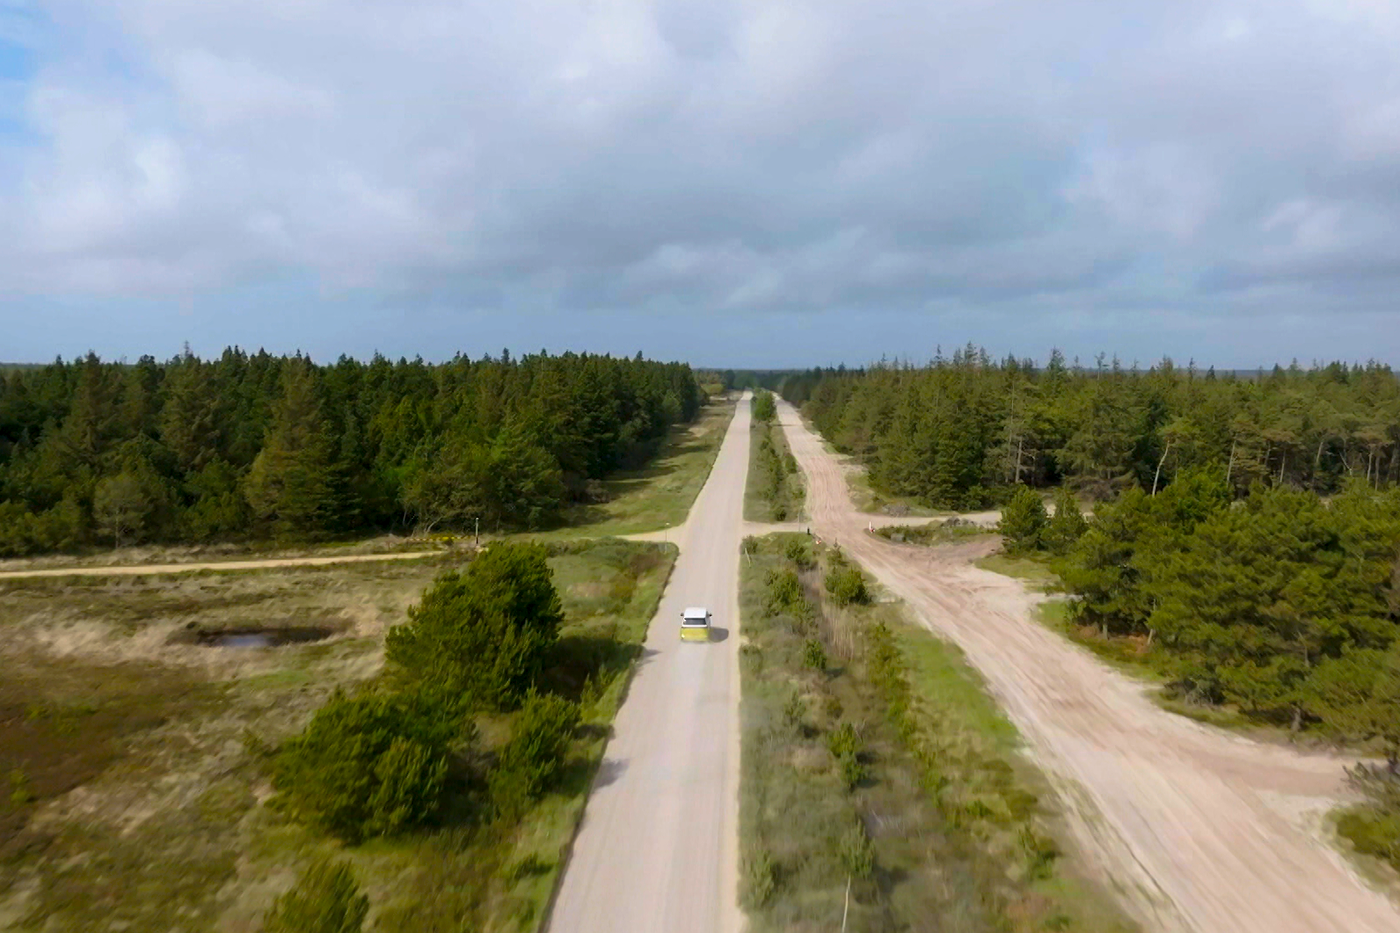 Weg met auto die door Denemarken rijdt en bos van bovenaf gefotografeerd